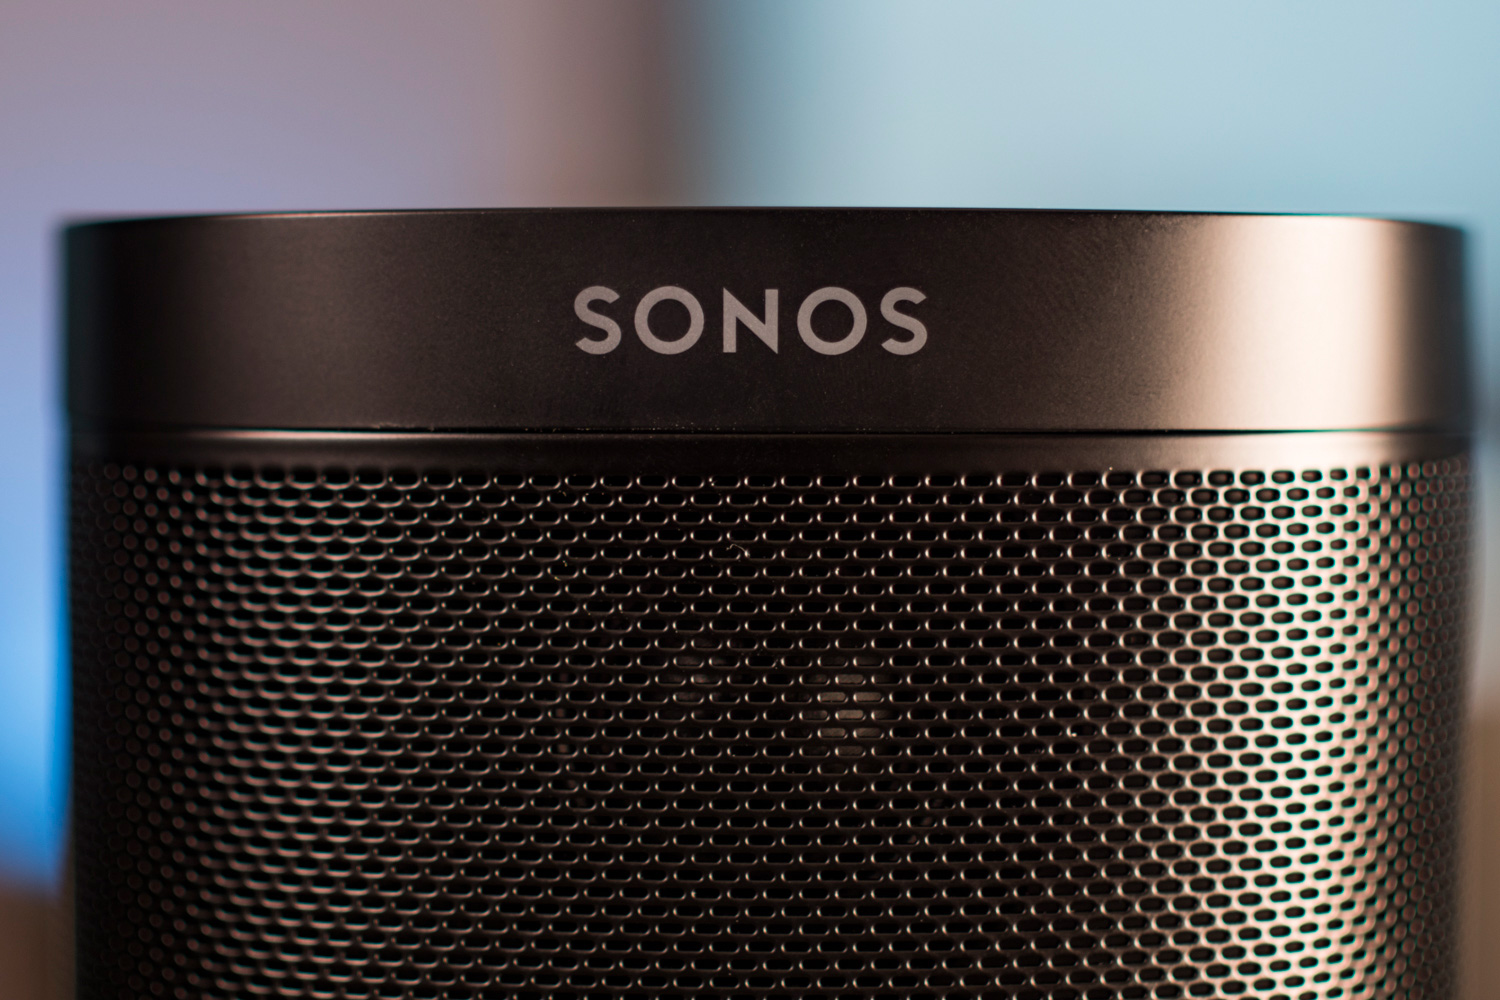 Logotipo do alto-falante Sonos.